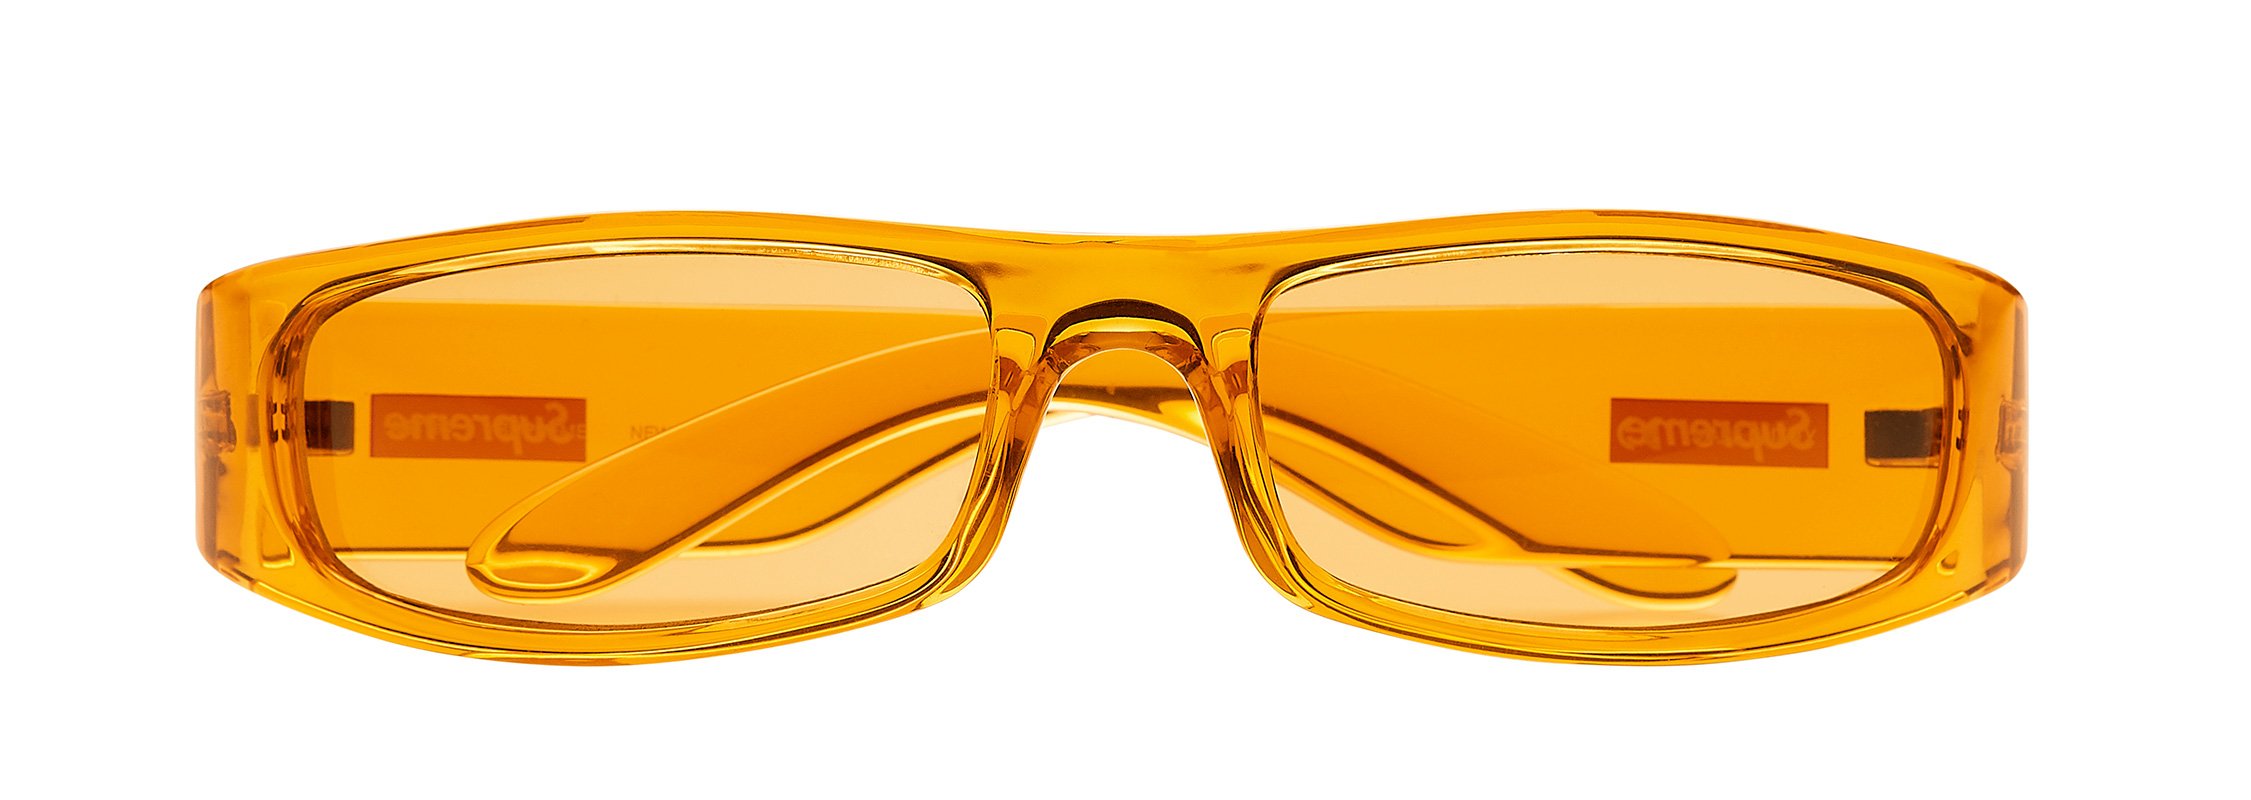 【美品】Supreme Astro Sunglasses Orange